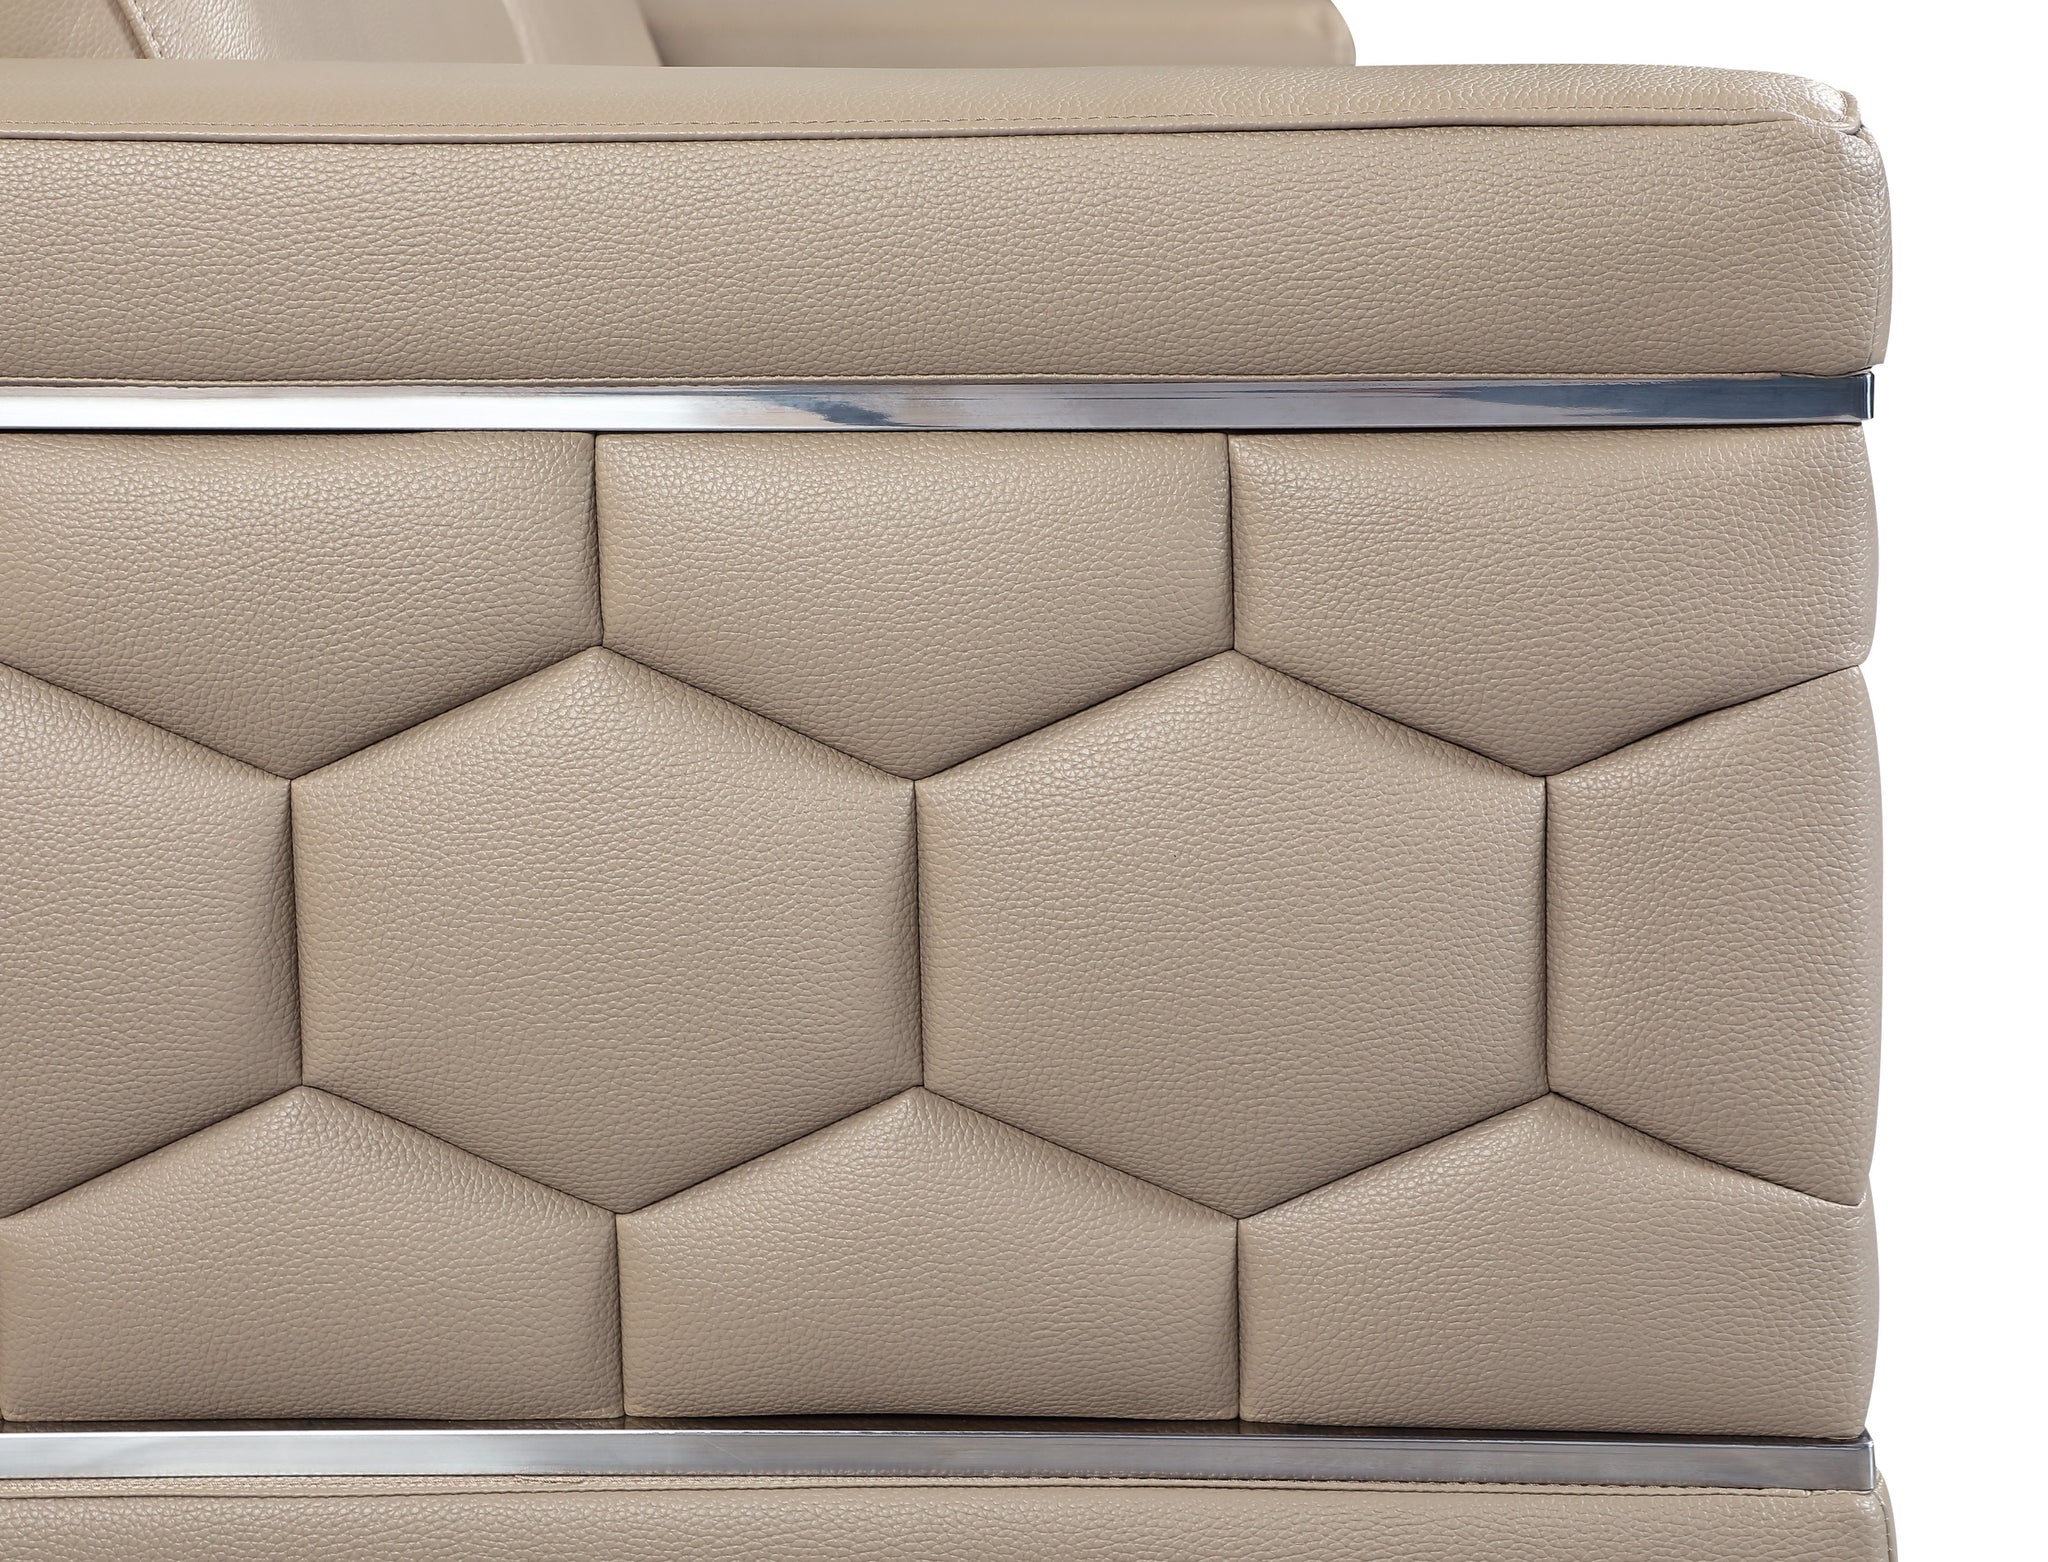 Top Grain Italian Leather Chair beige-foam-leather